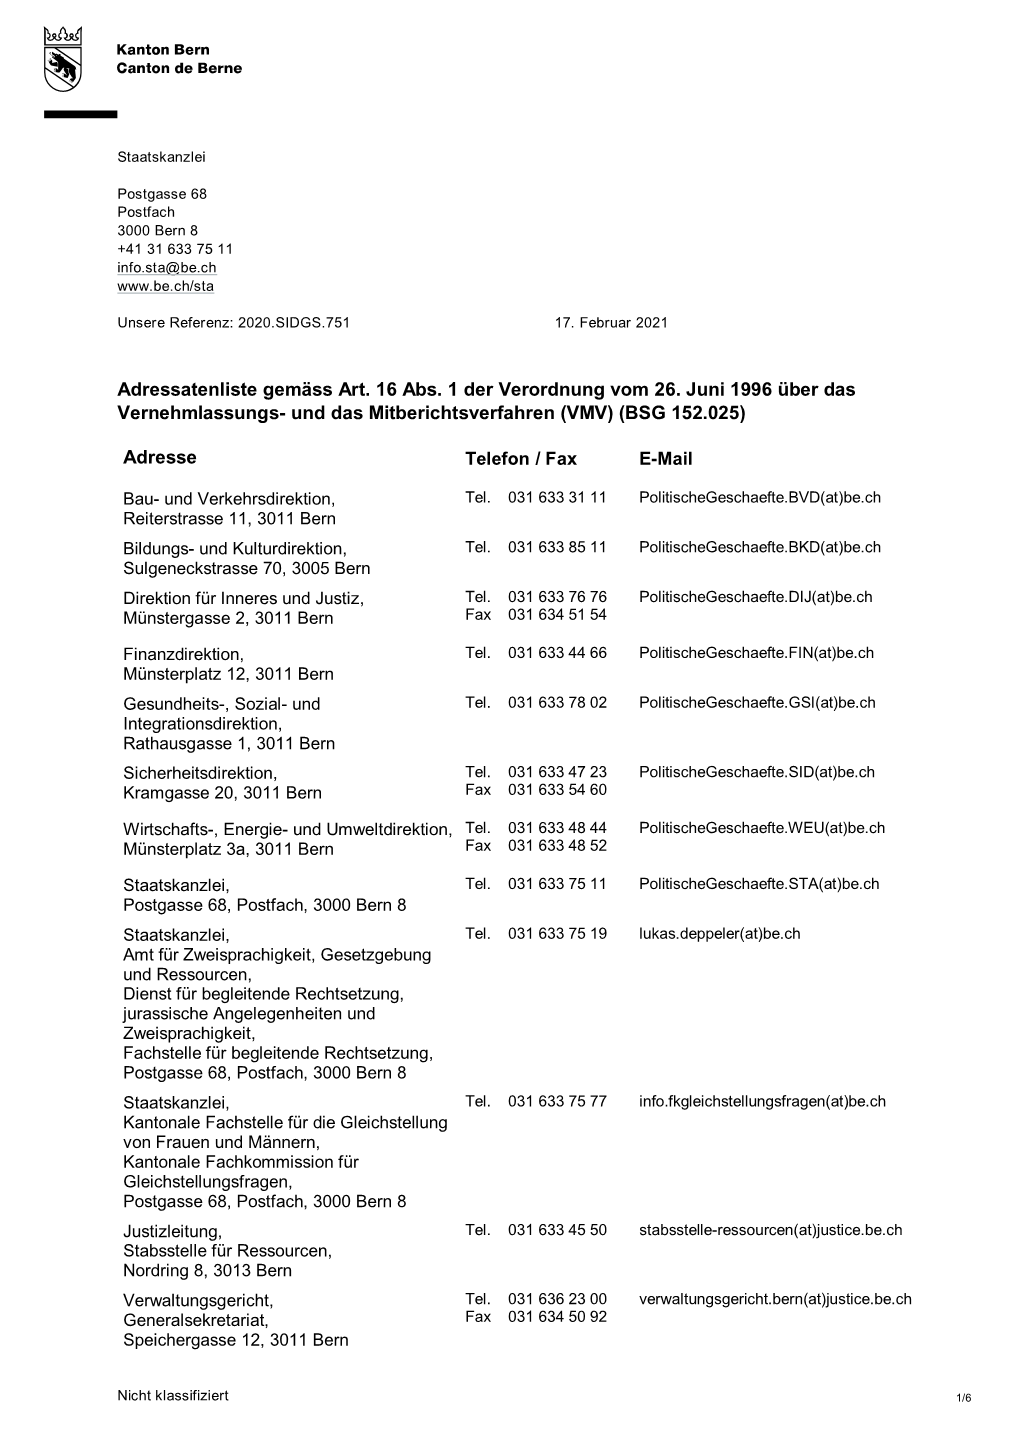 Adressatenliste Gemäss Art. 16 Abs. 1 Der Verordnung Vom 26. Juni 1996 Über Das Vernehmlassungs - Und Das Mitberichtsverfahren (VMV) (BSG 152.025)